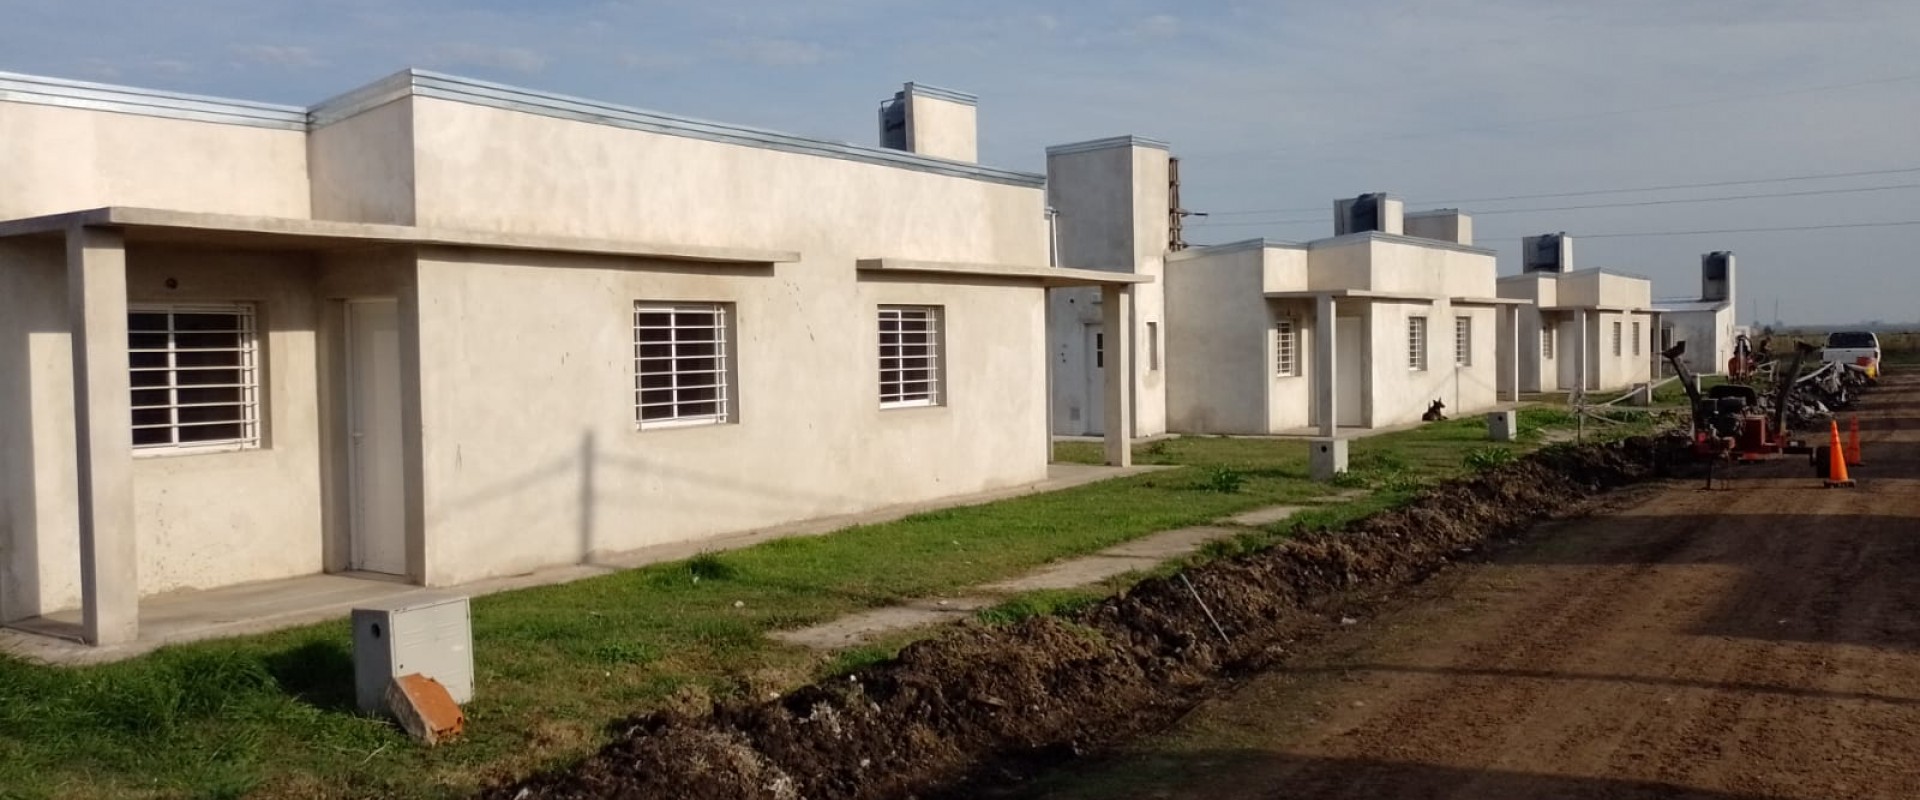 Listado provisorio para el sorteo de 10 viviendas en General Campos